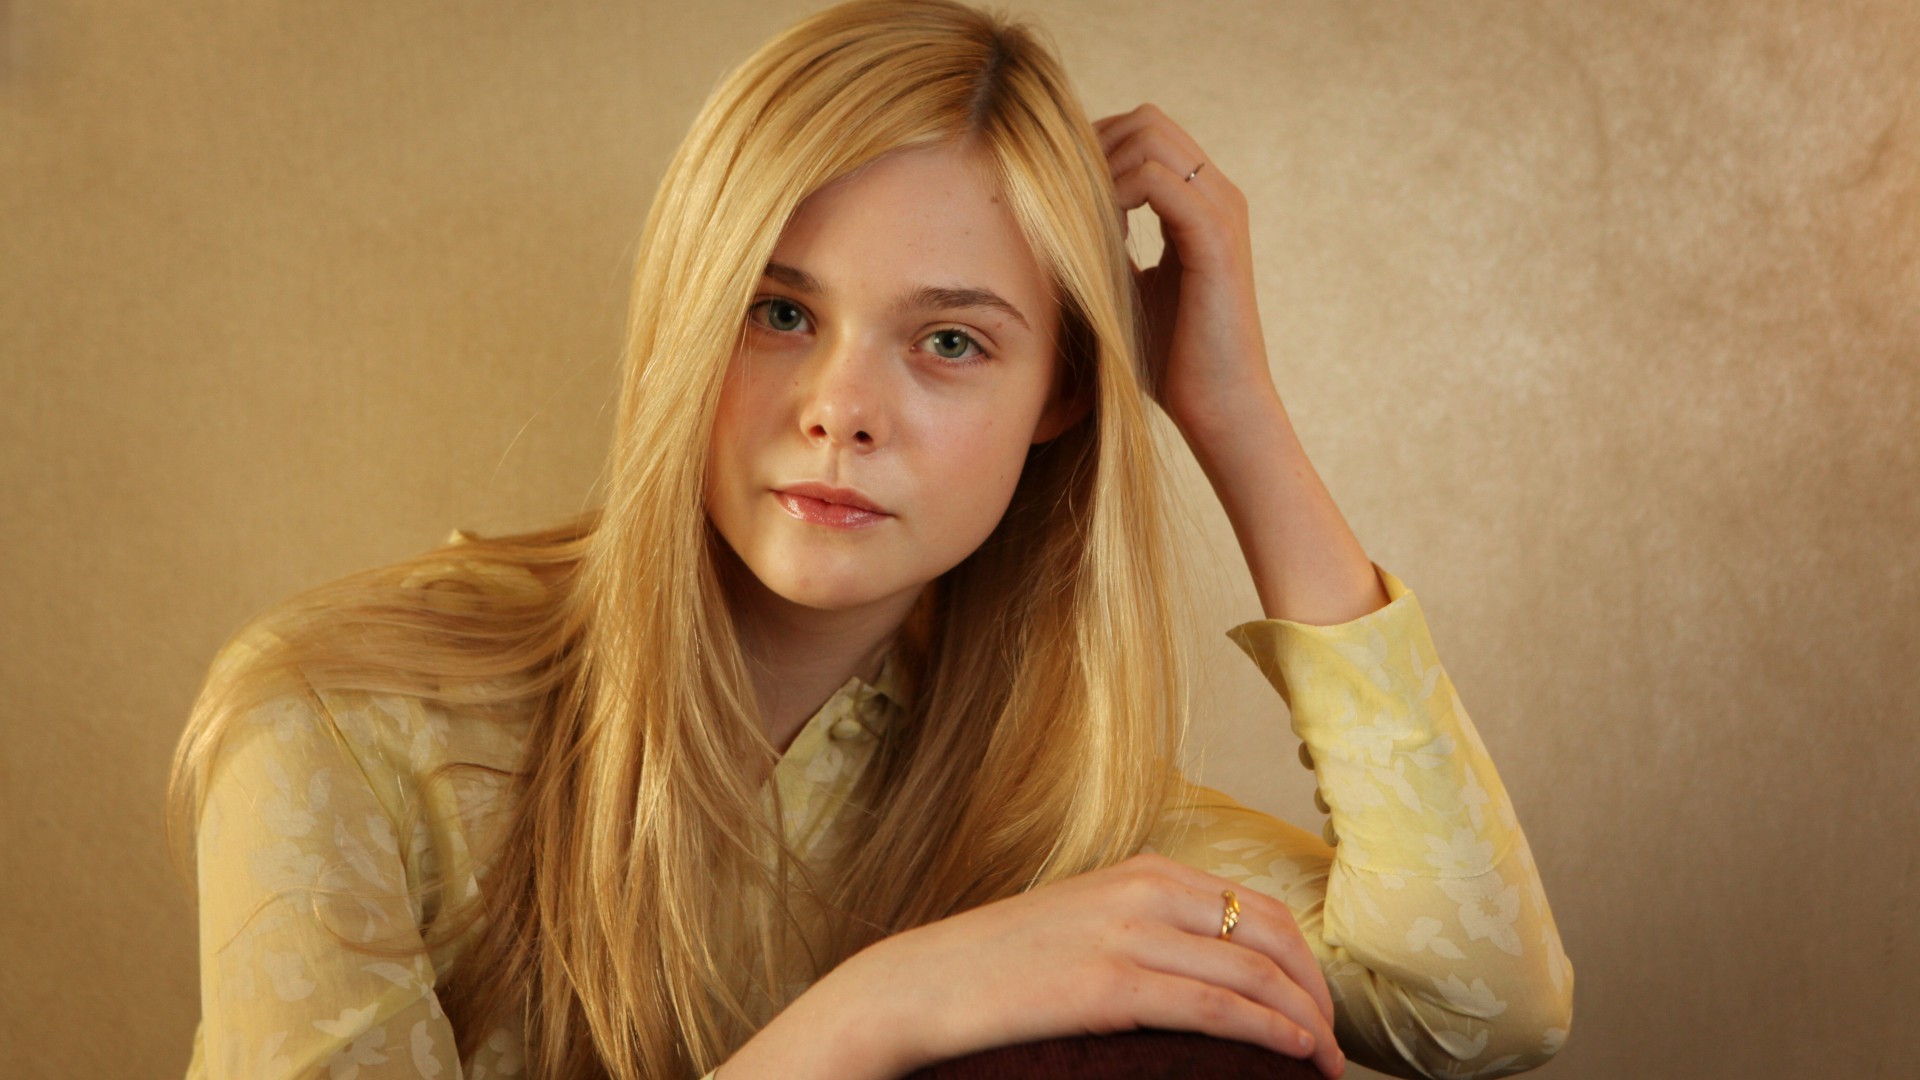 Elle Fanning, Actress, blonde, portrait (horizontal)